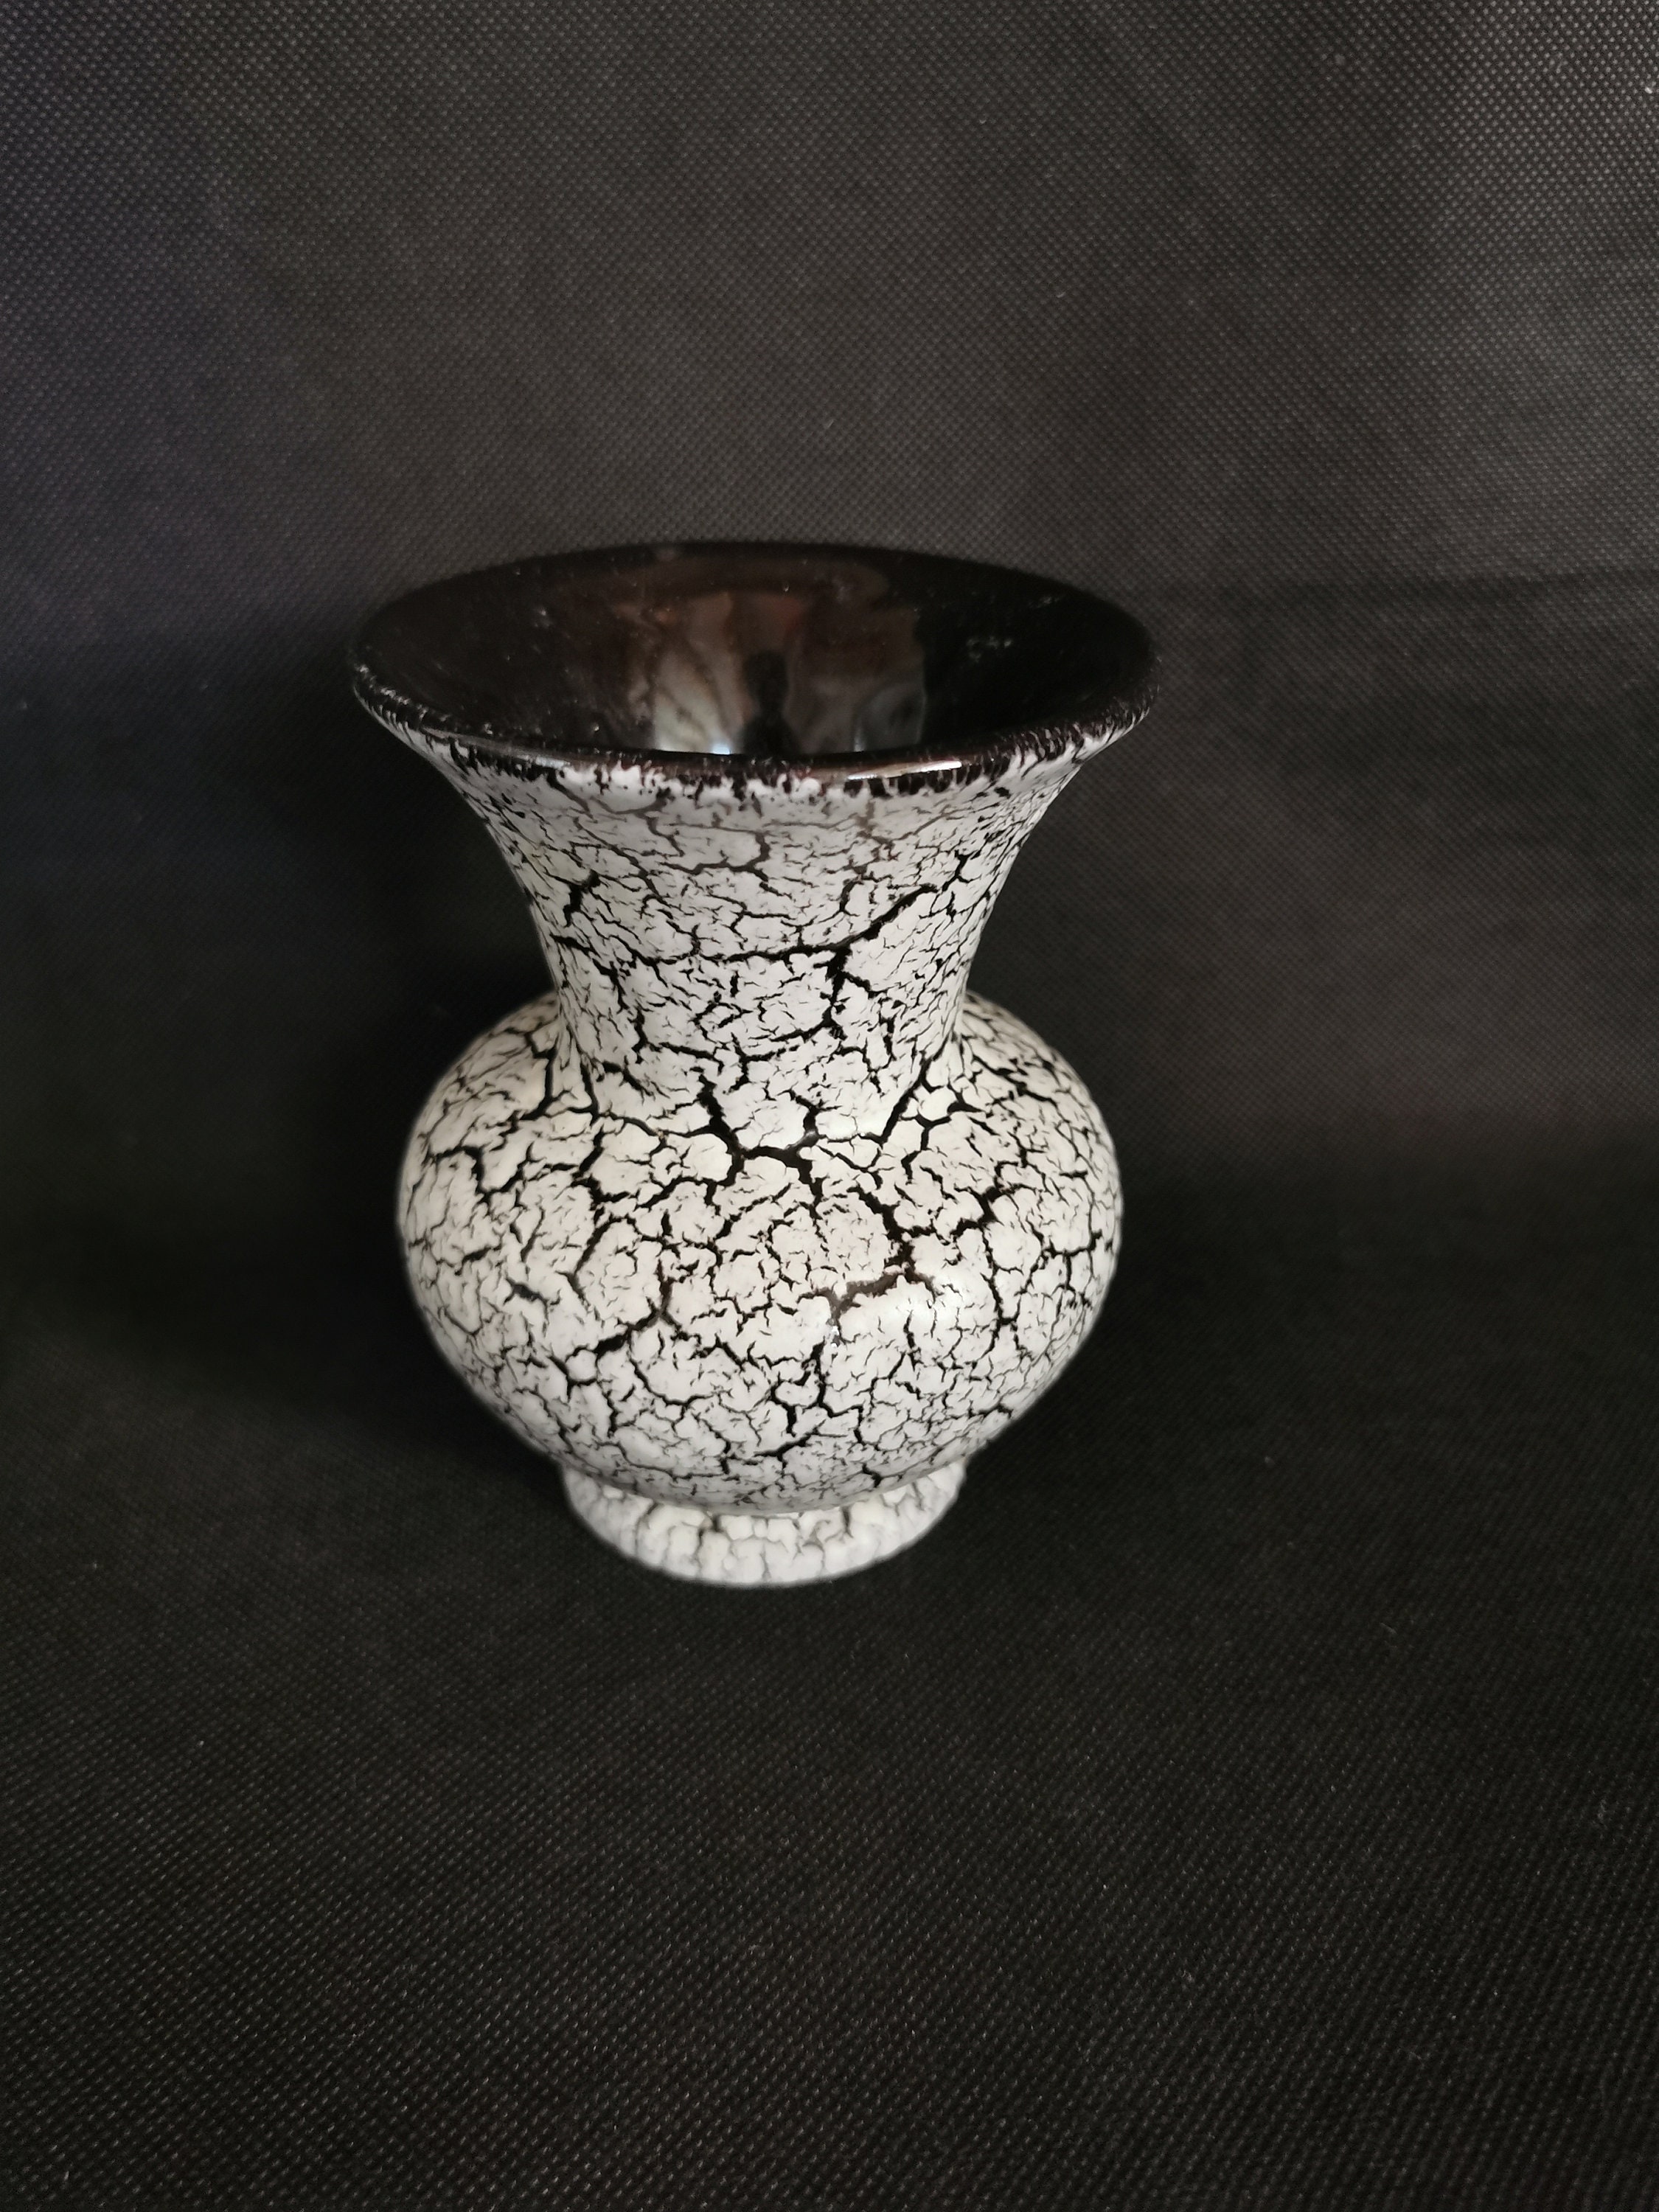 Buy White Craquele Vase Online In India -  India